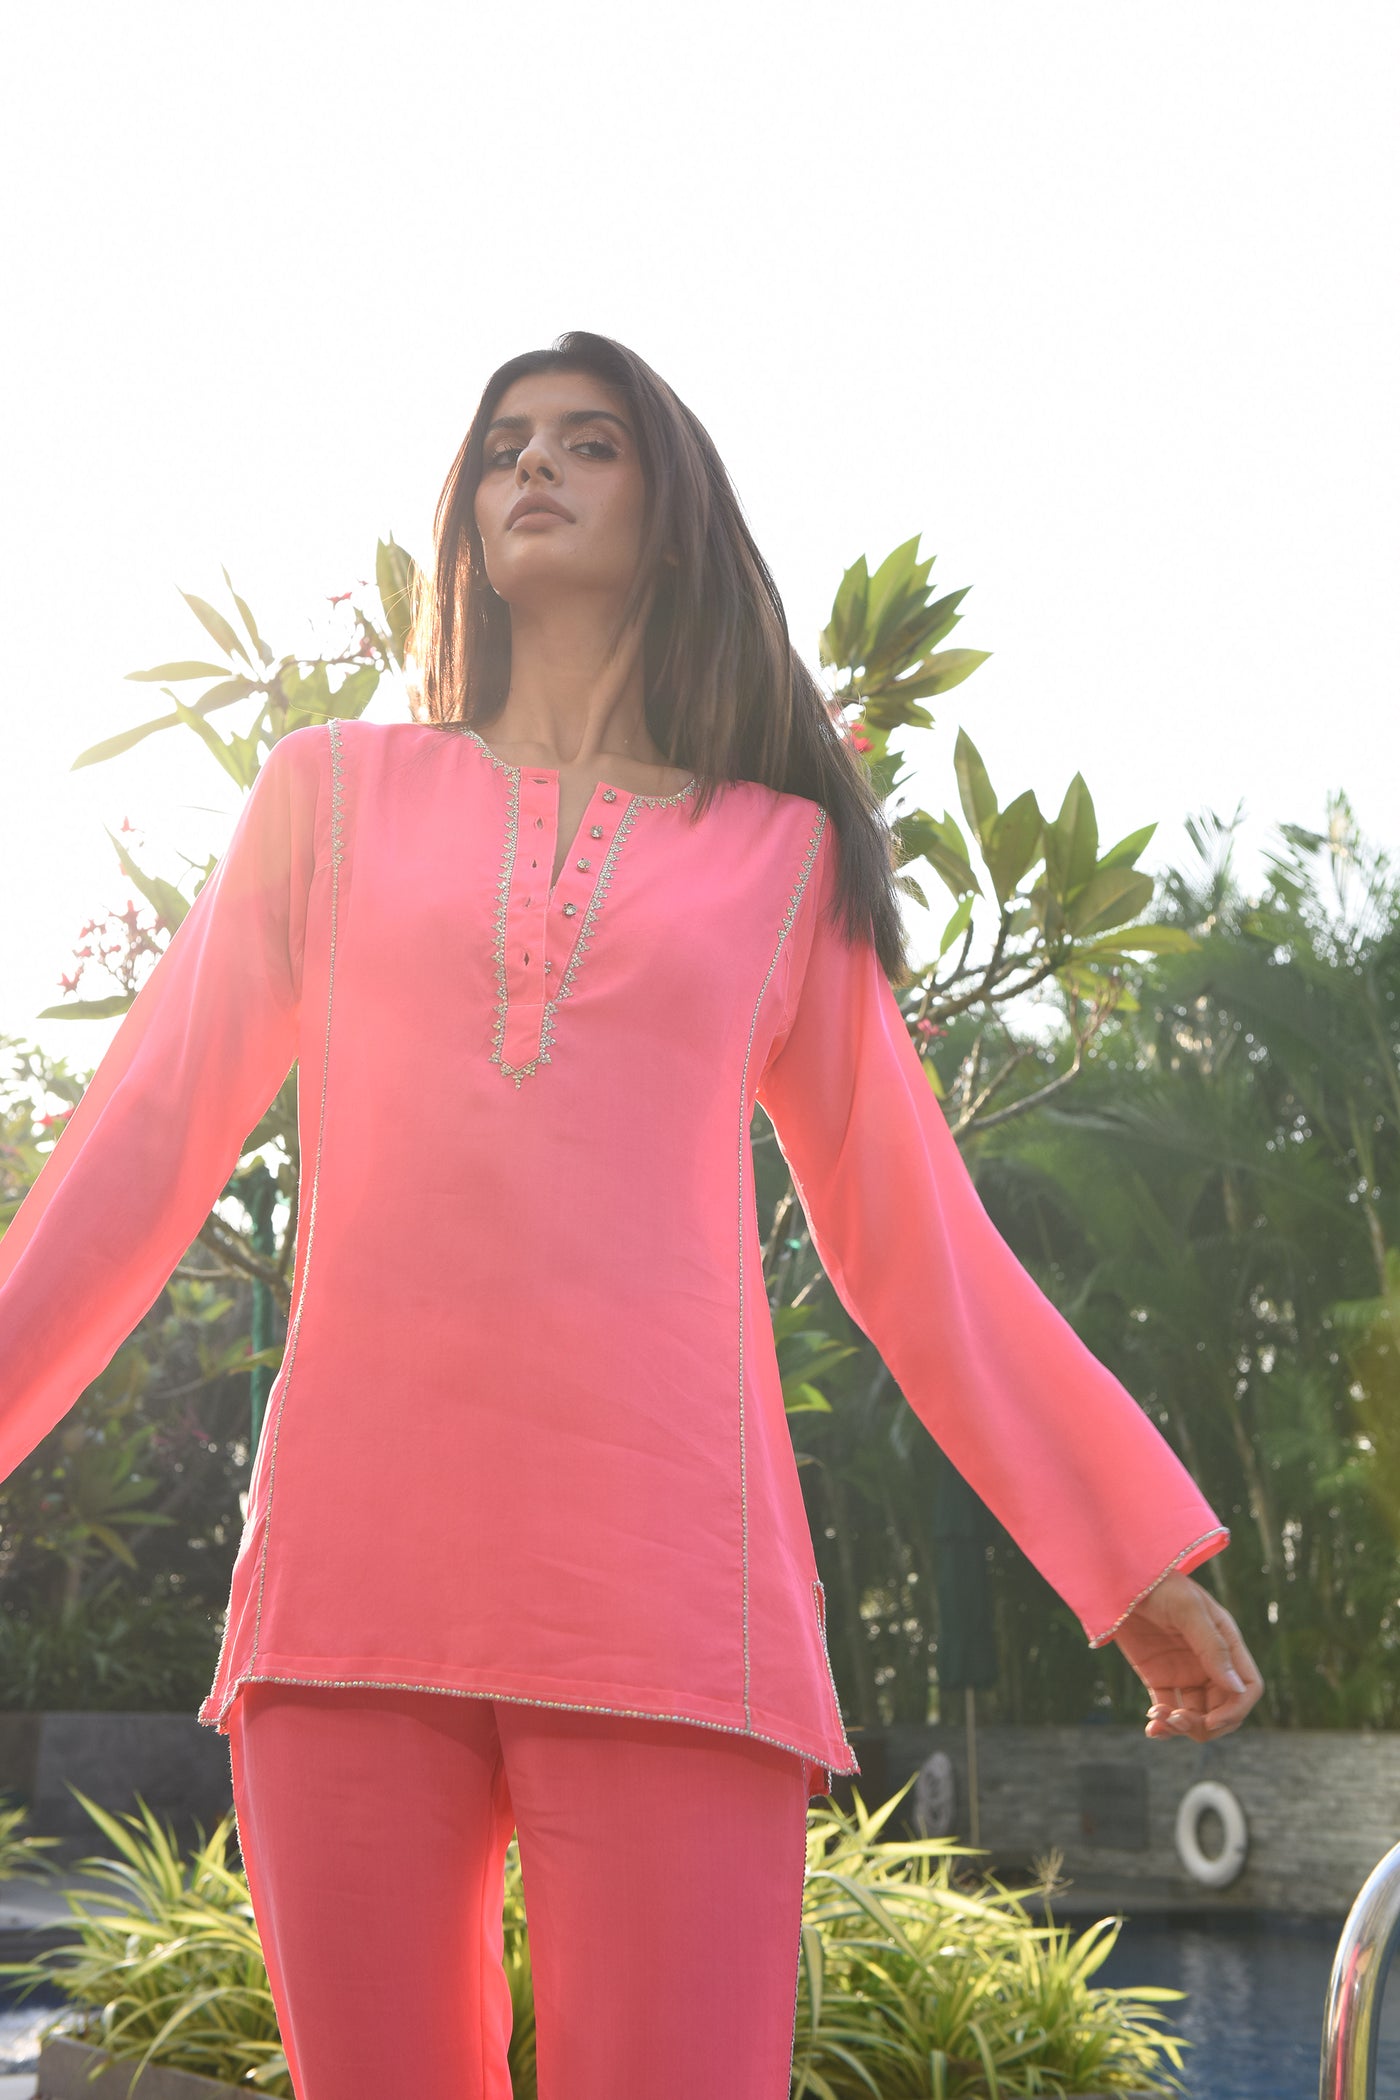 monisha jaising Raani Twin Set pink online shopping melange singapore indian designer wear